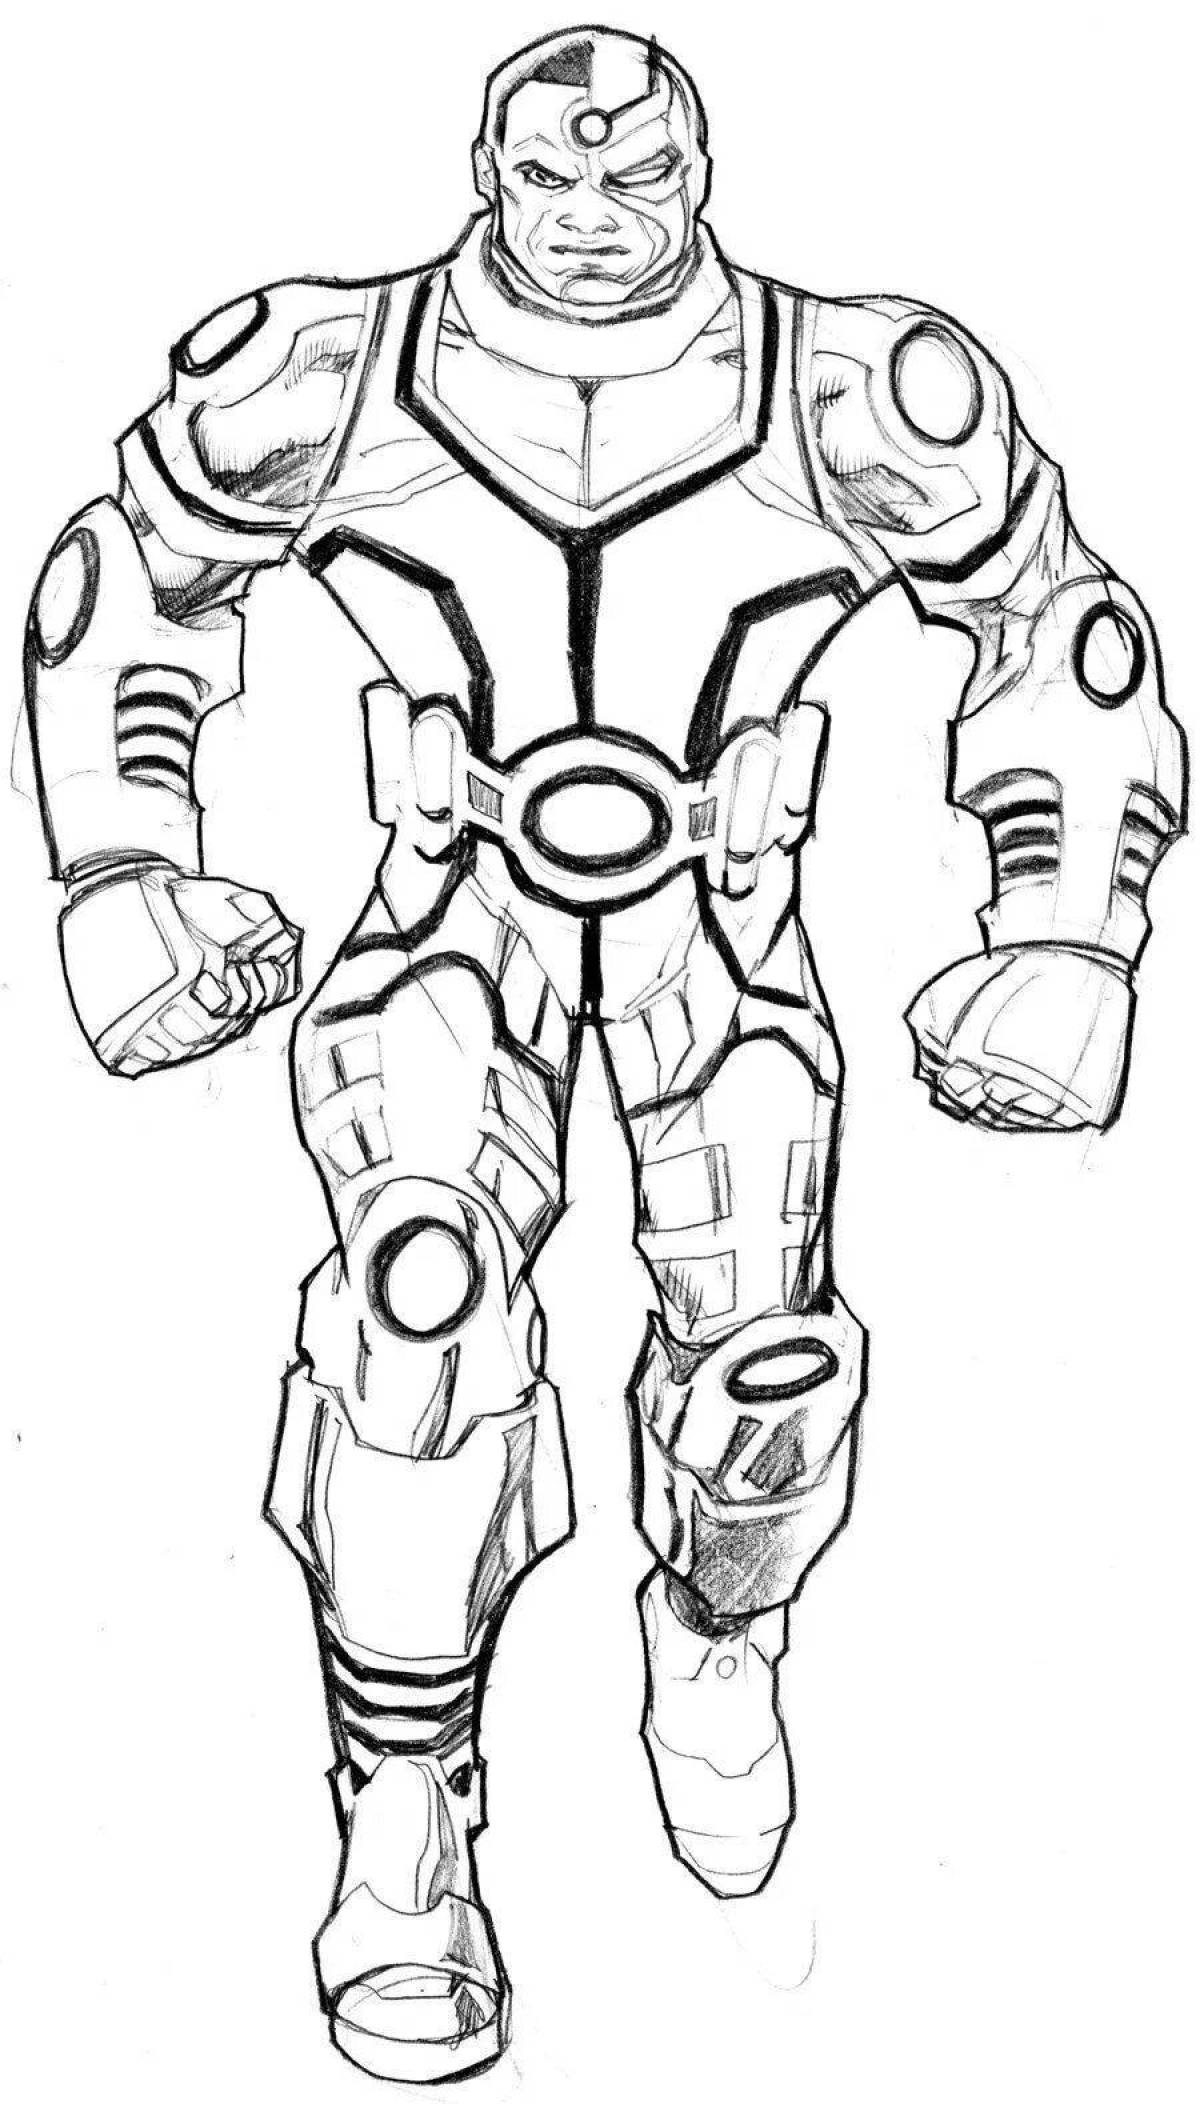 Cyborg #4